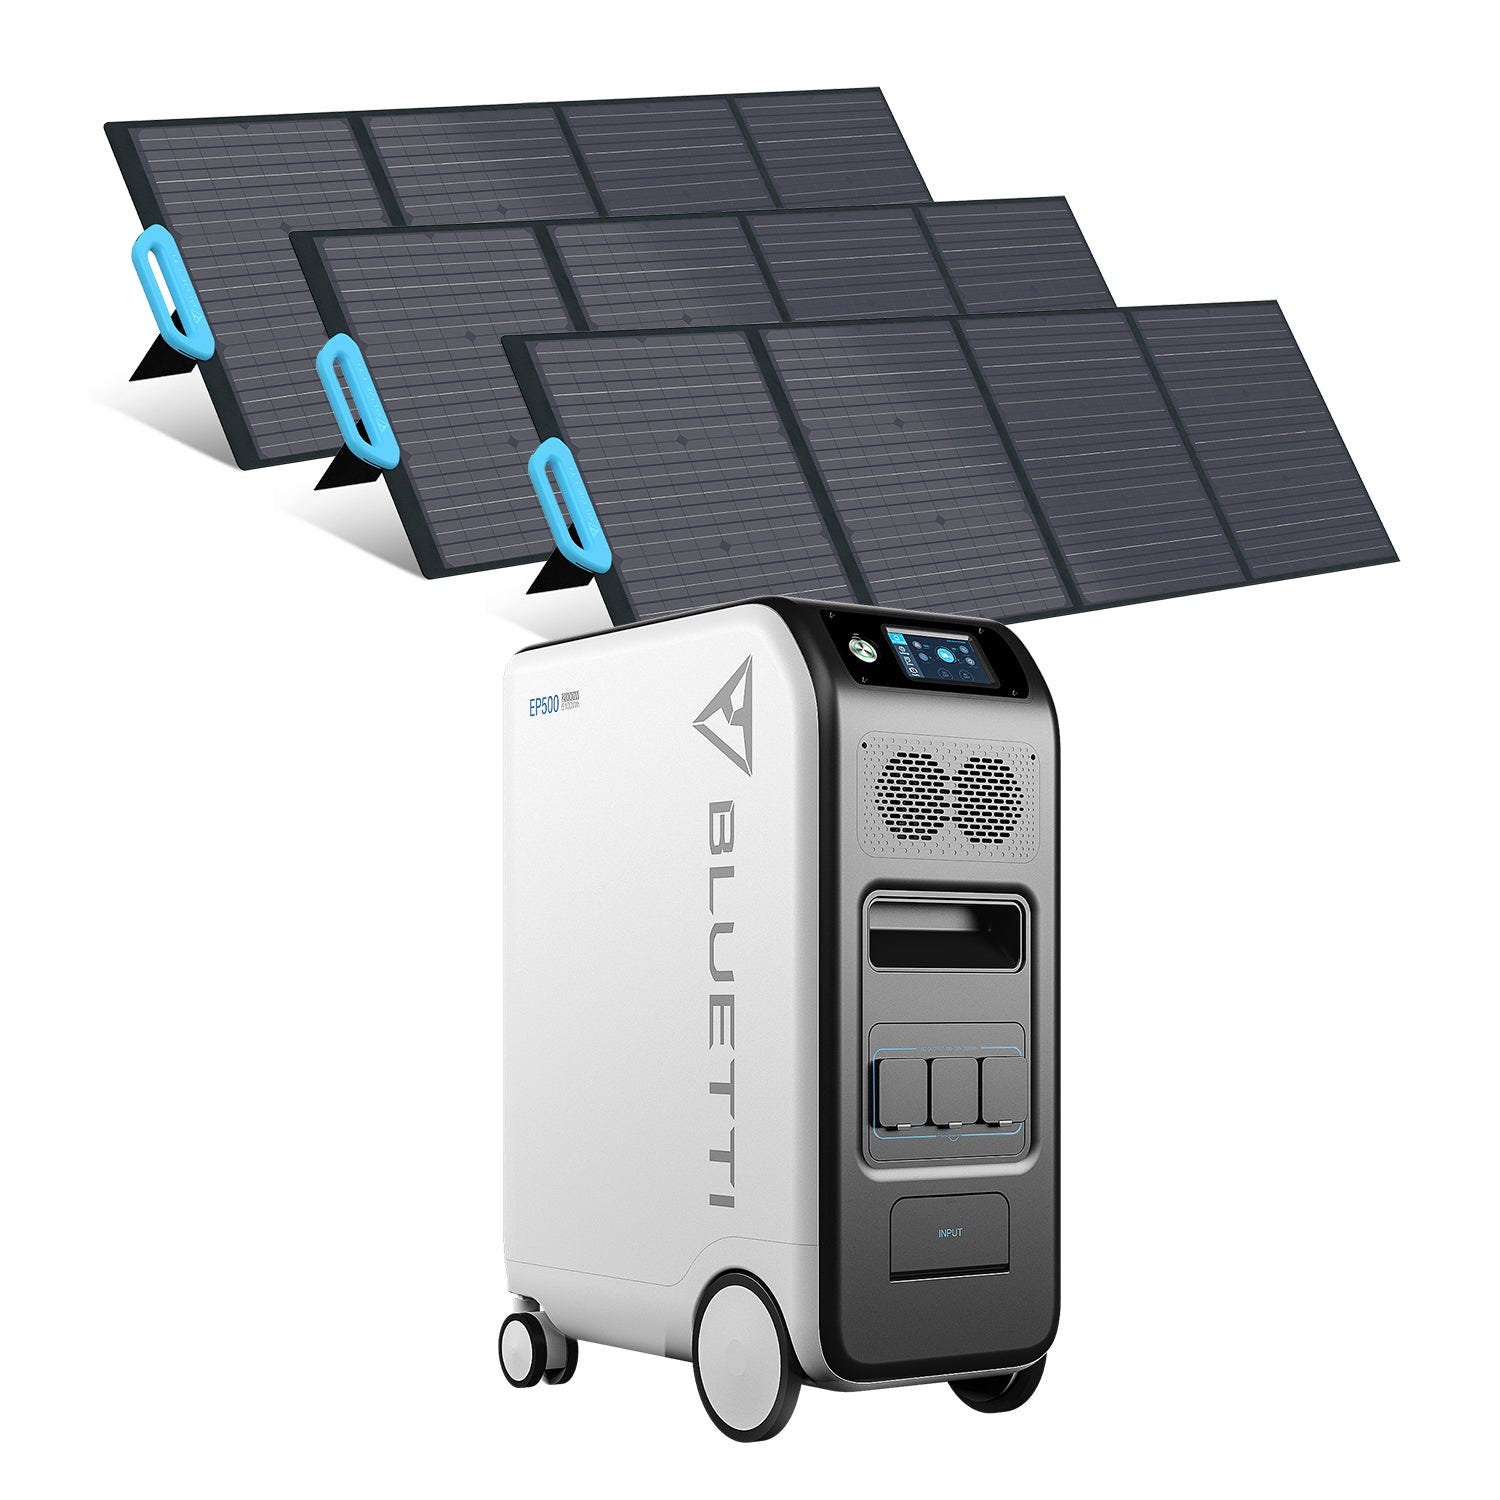 BLUETTI Kit de générateur solaire 5100Wh avec 3 panneaux solaires de 200 W groupe électrogène solaire station énergie mobile et domestique extensible 0